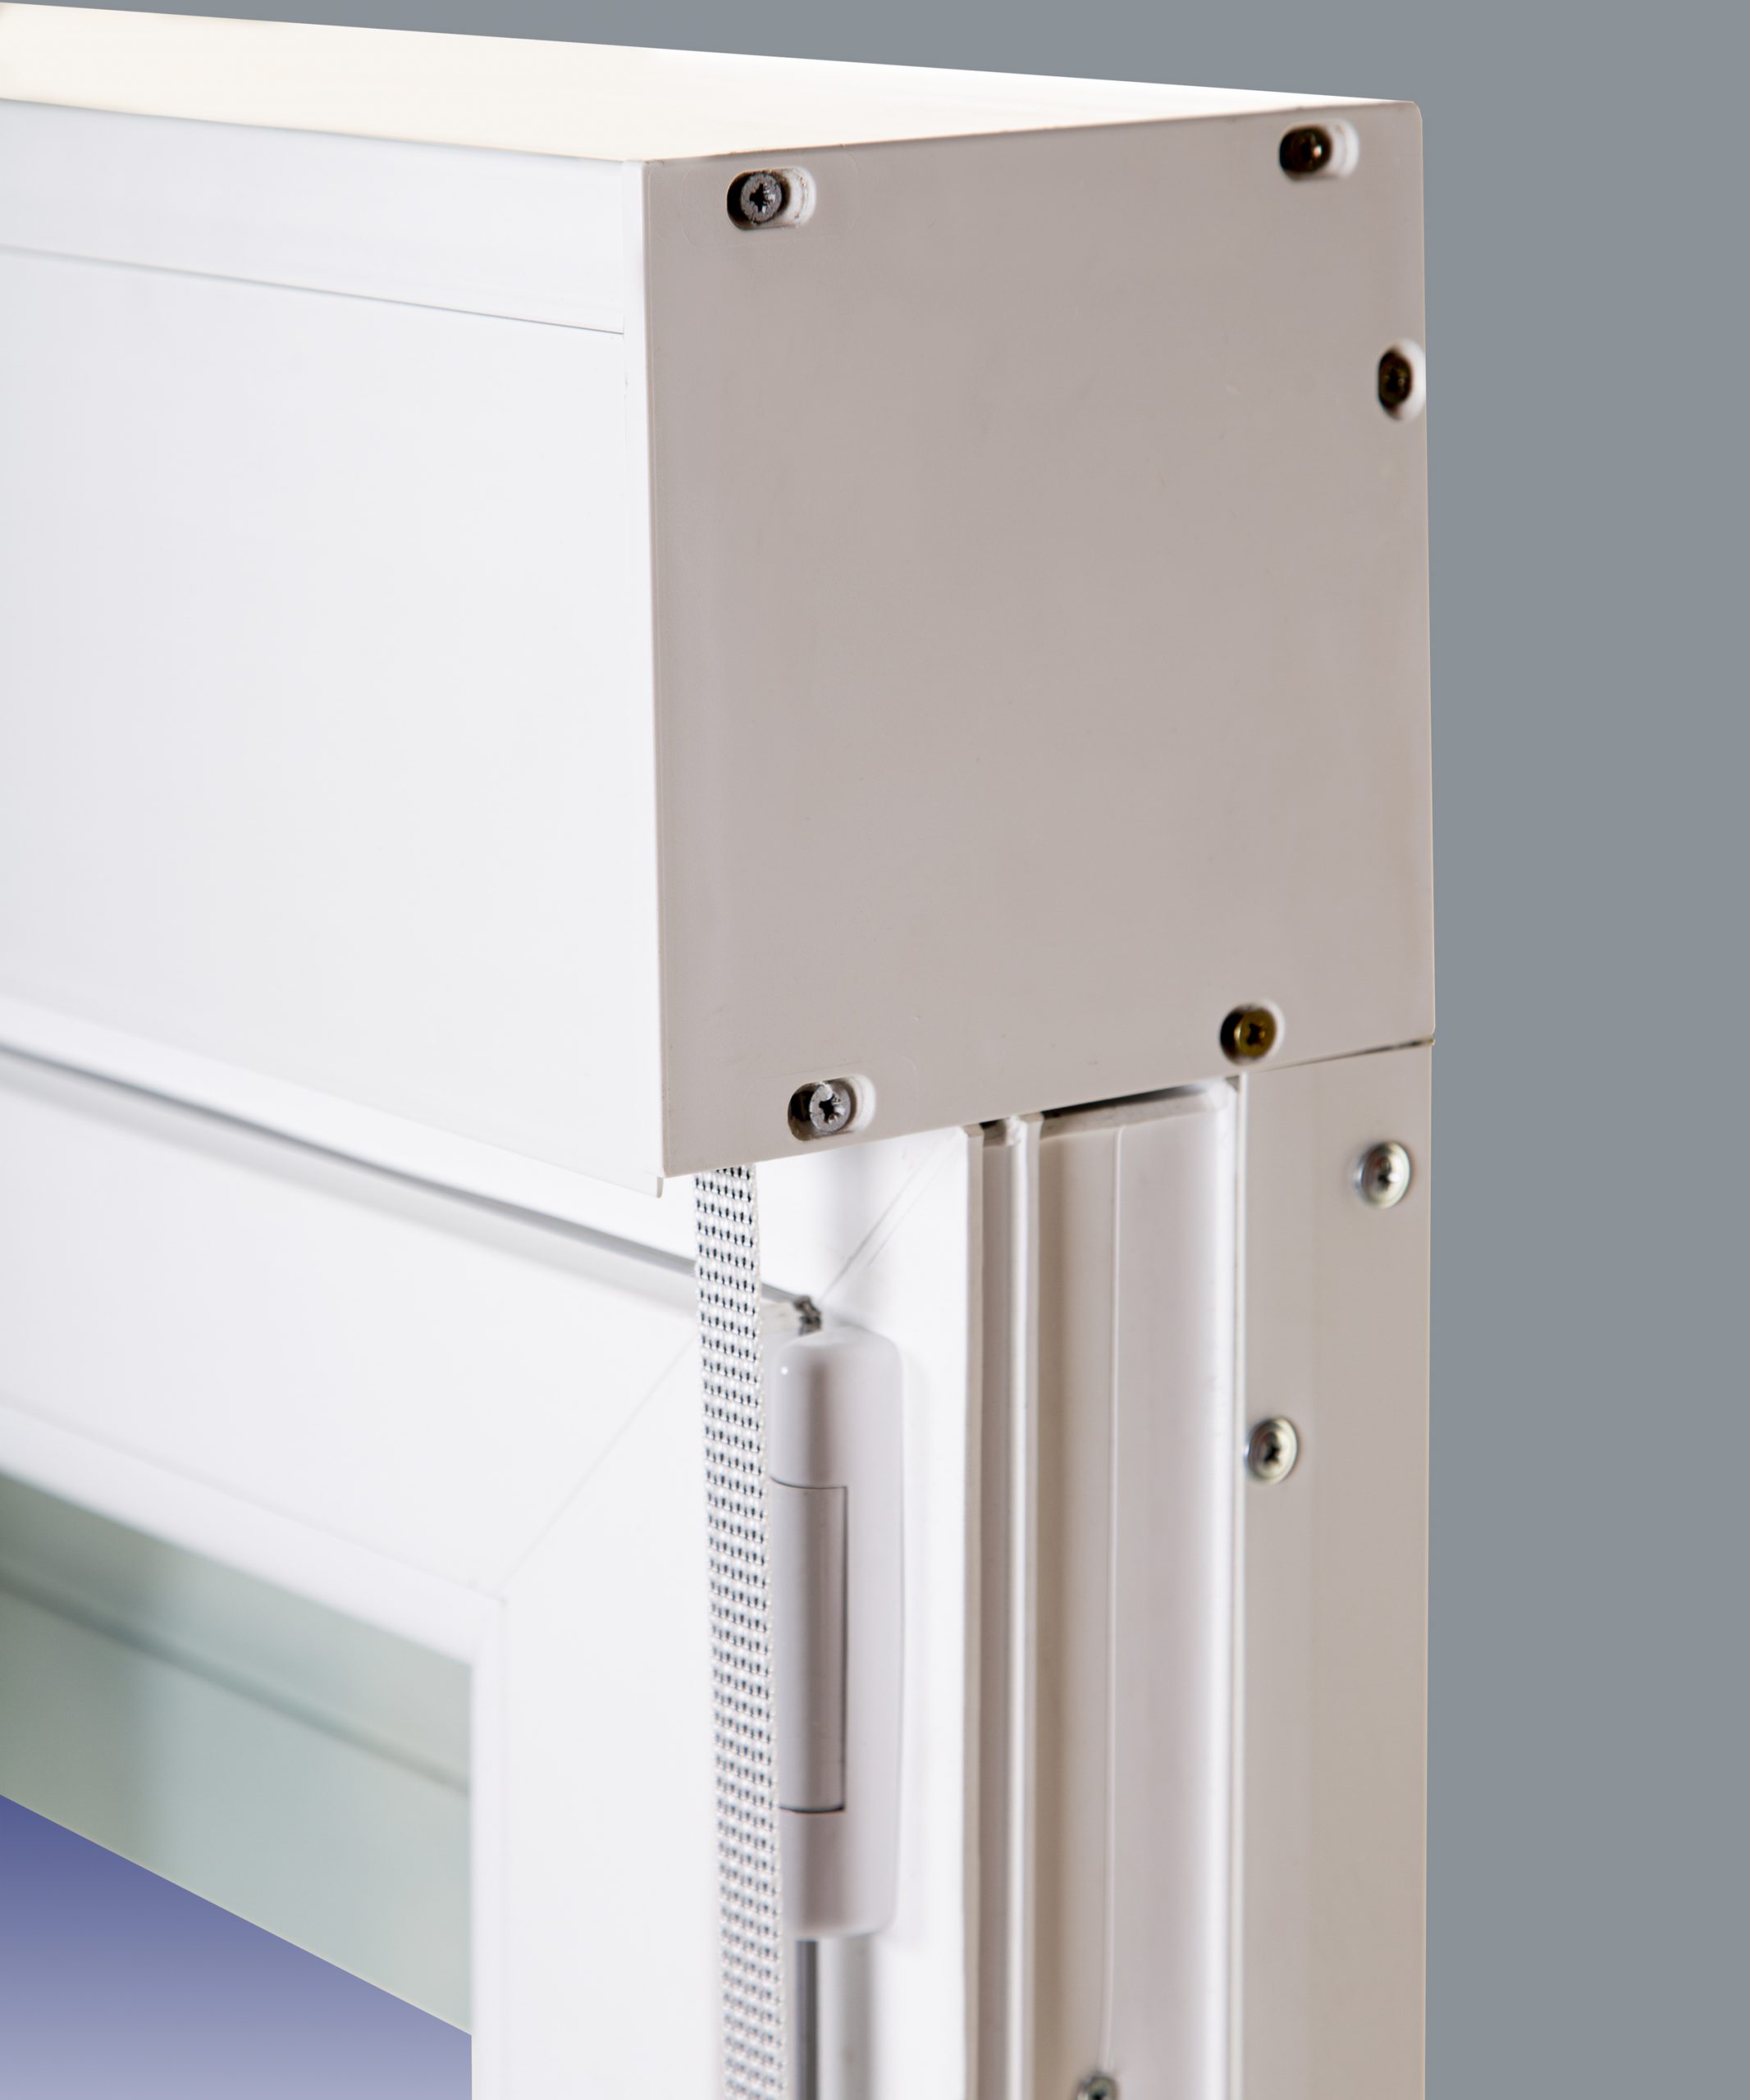 Balconera PVC Practicable Oscilobatiente Derecha con Persiana (PVC)  800X2185 1h (marco y cajón persiana en kit)